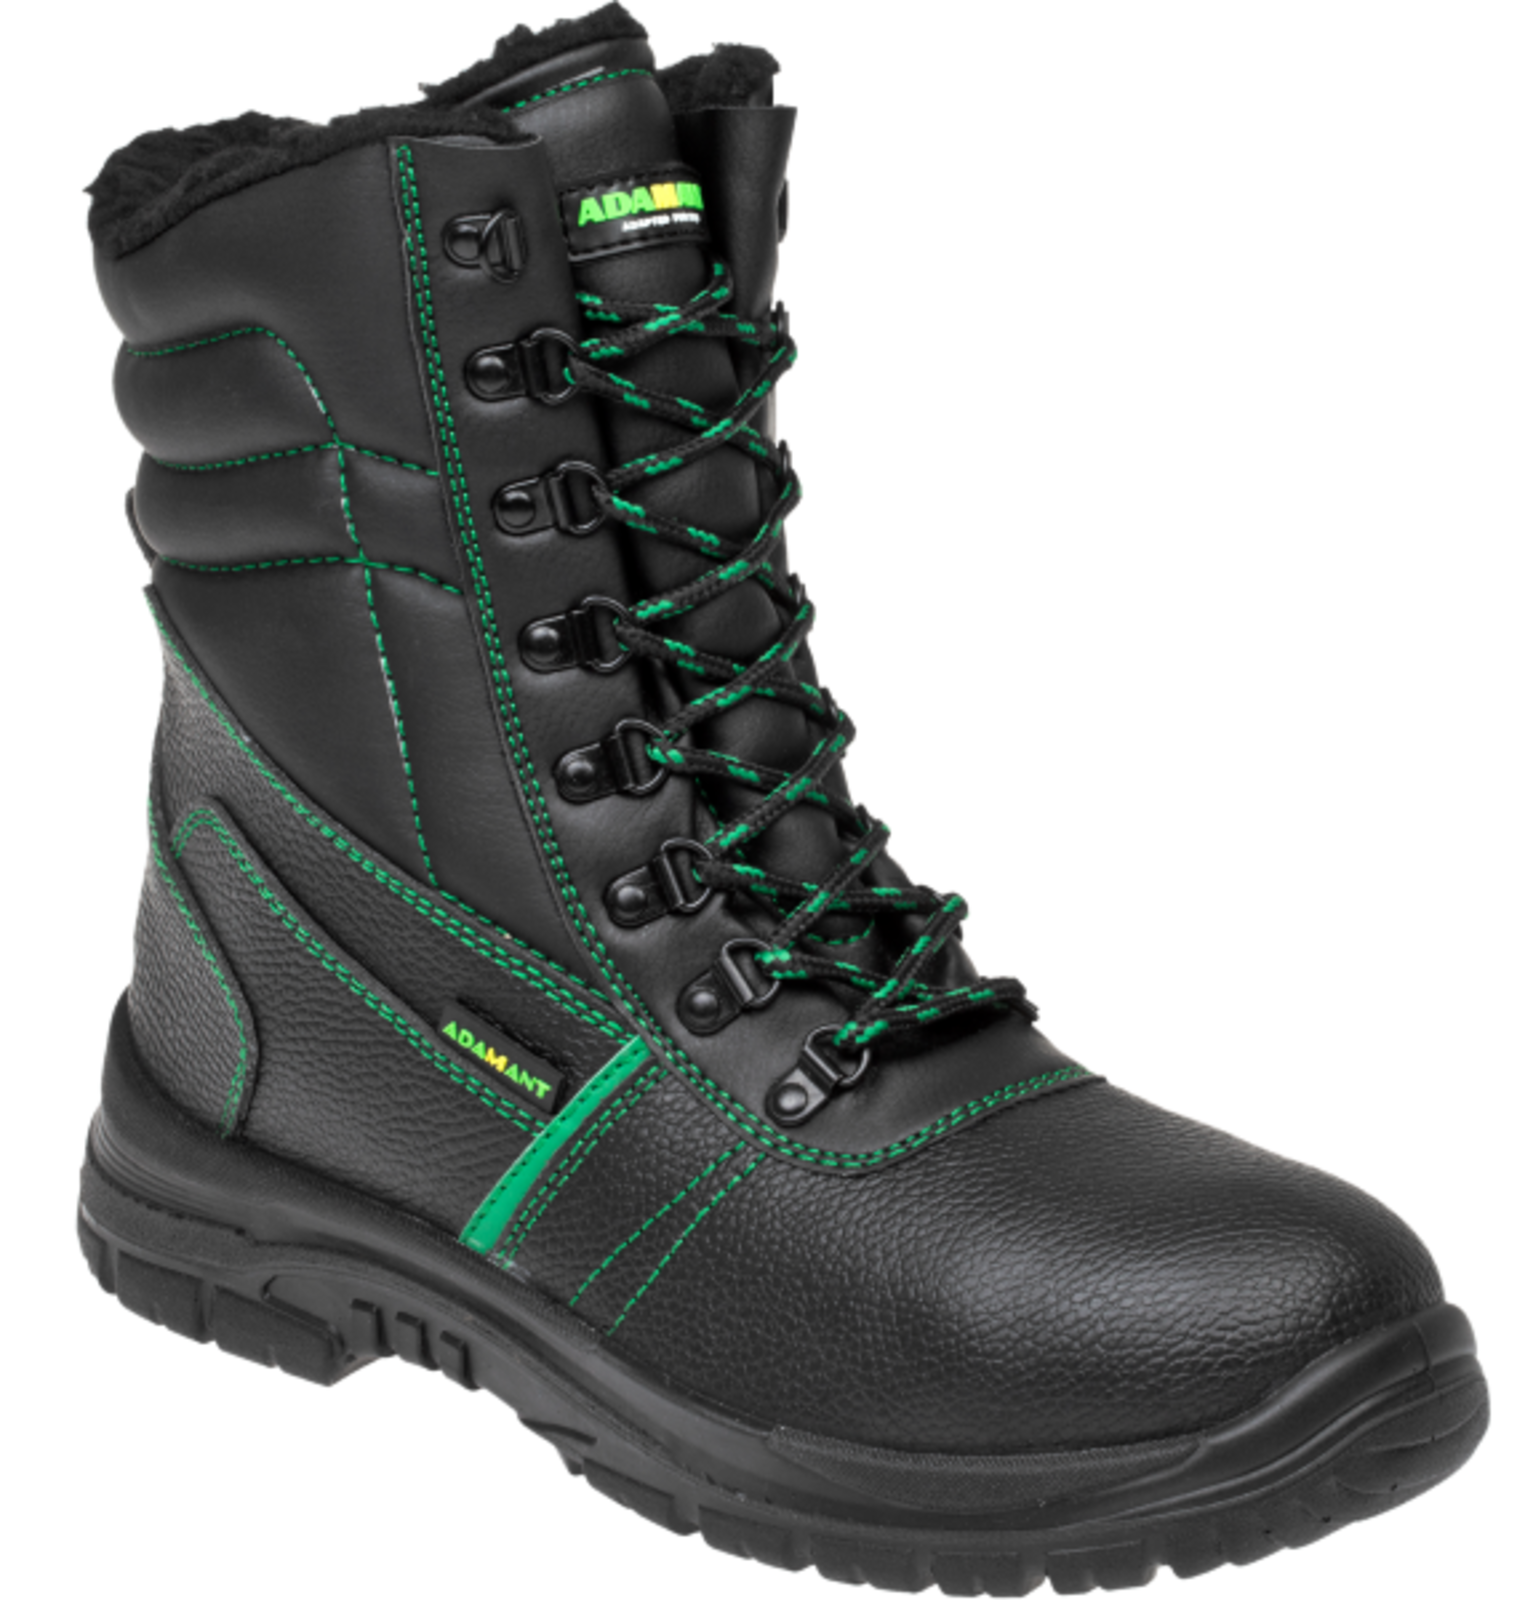 Zimná vysoká bezpečnostná obuv Adamant Classic S3 - veľkosť: 46, farba: čierna